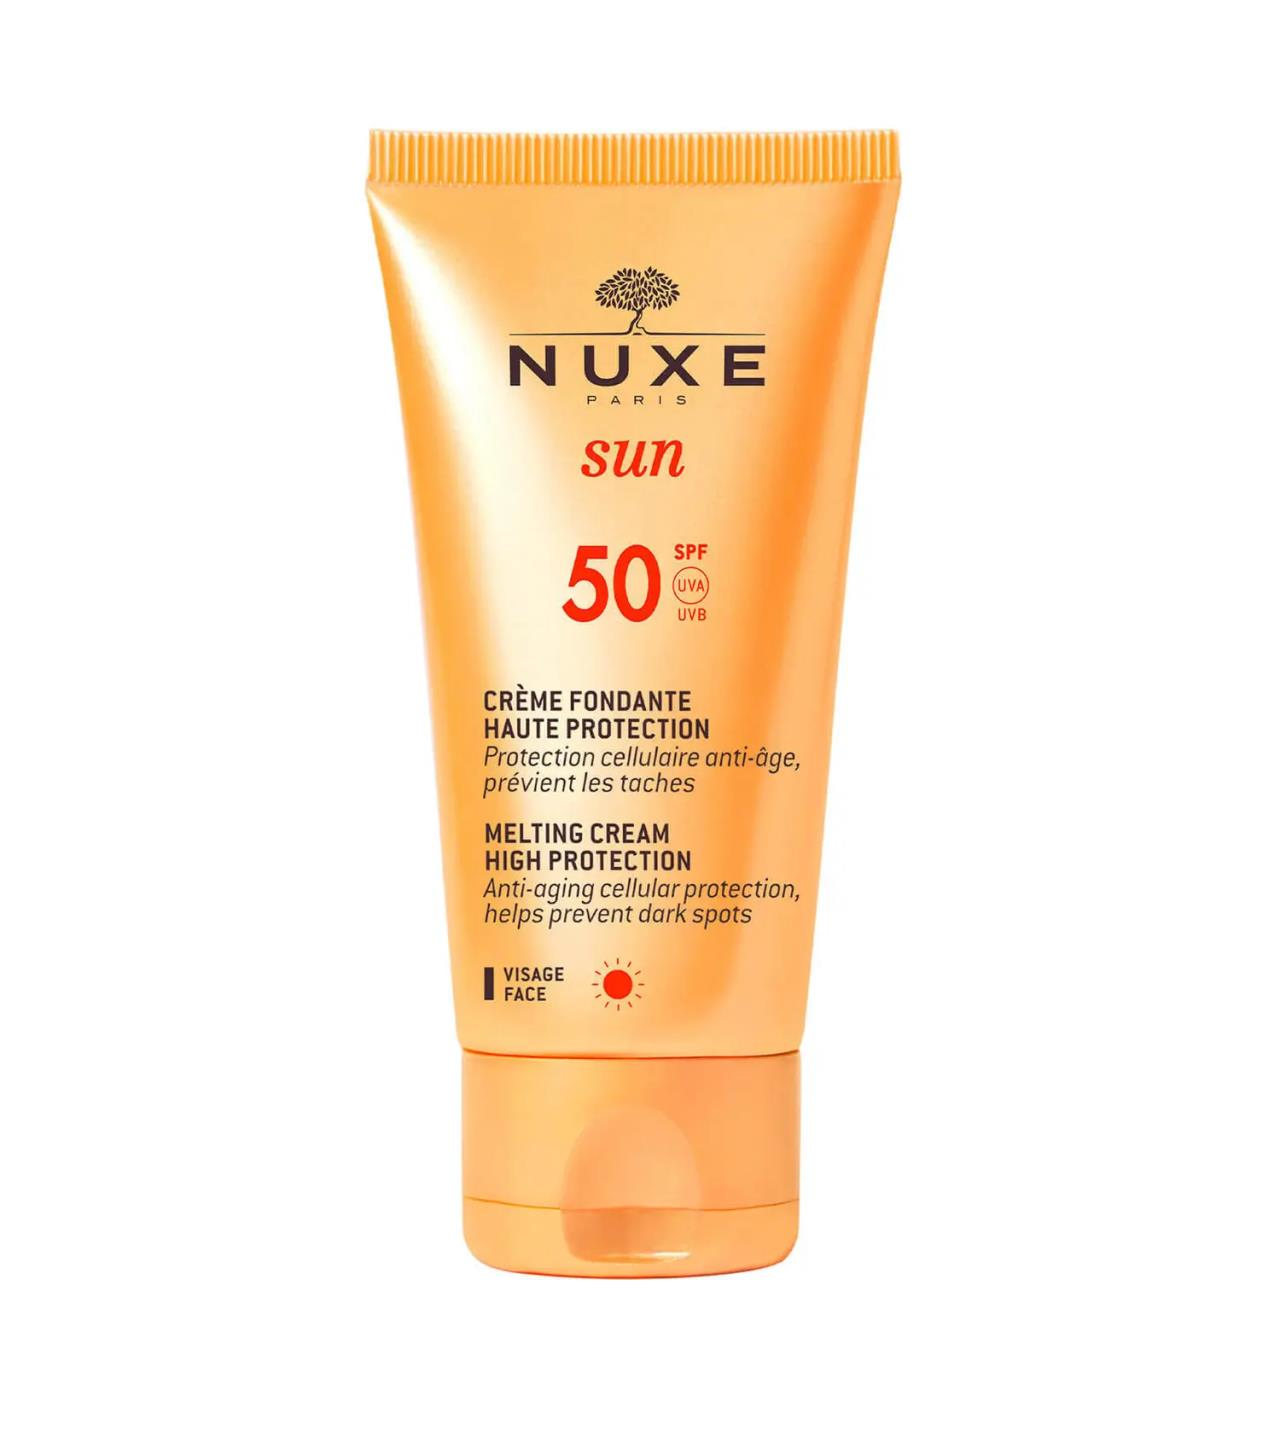 Nuxe Sun Creme Fondante Visage Haute Protection SPF50 50ml